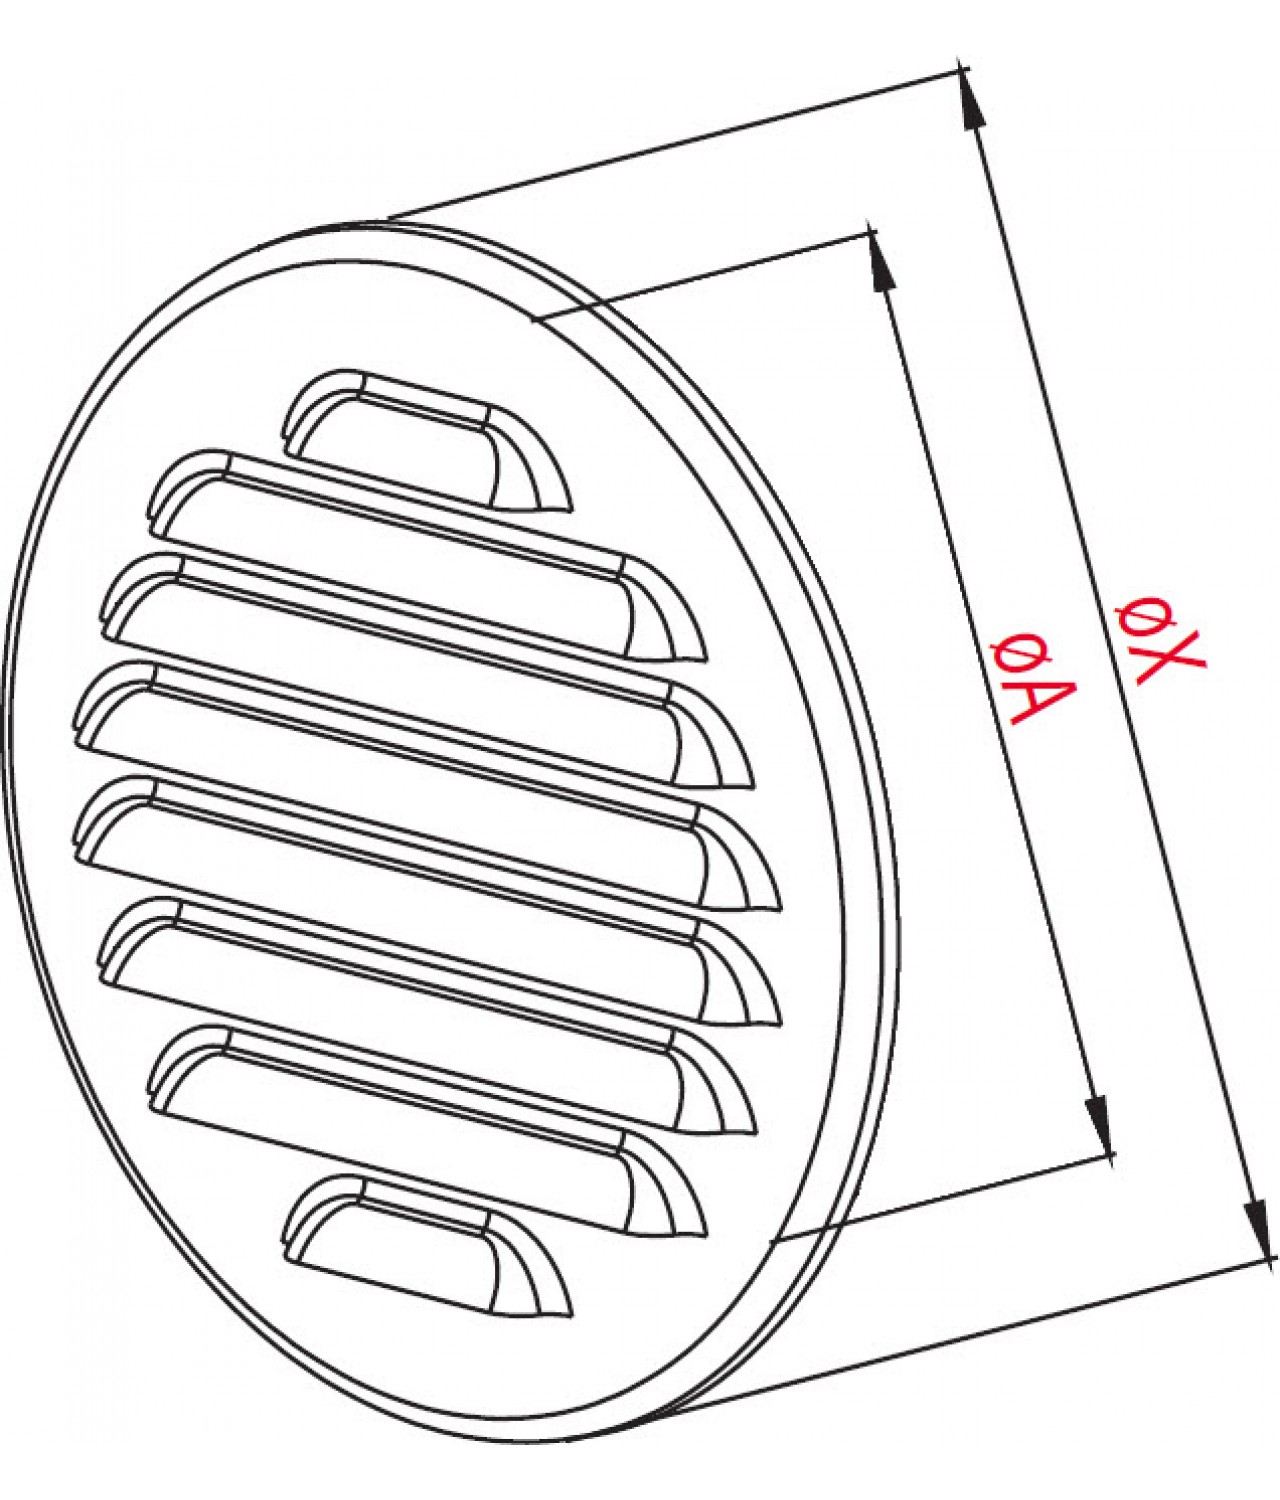 Вентиляционная решетка из нержавеющей стали META14N Ø100 мм - чертеж